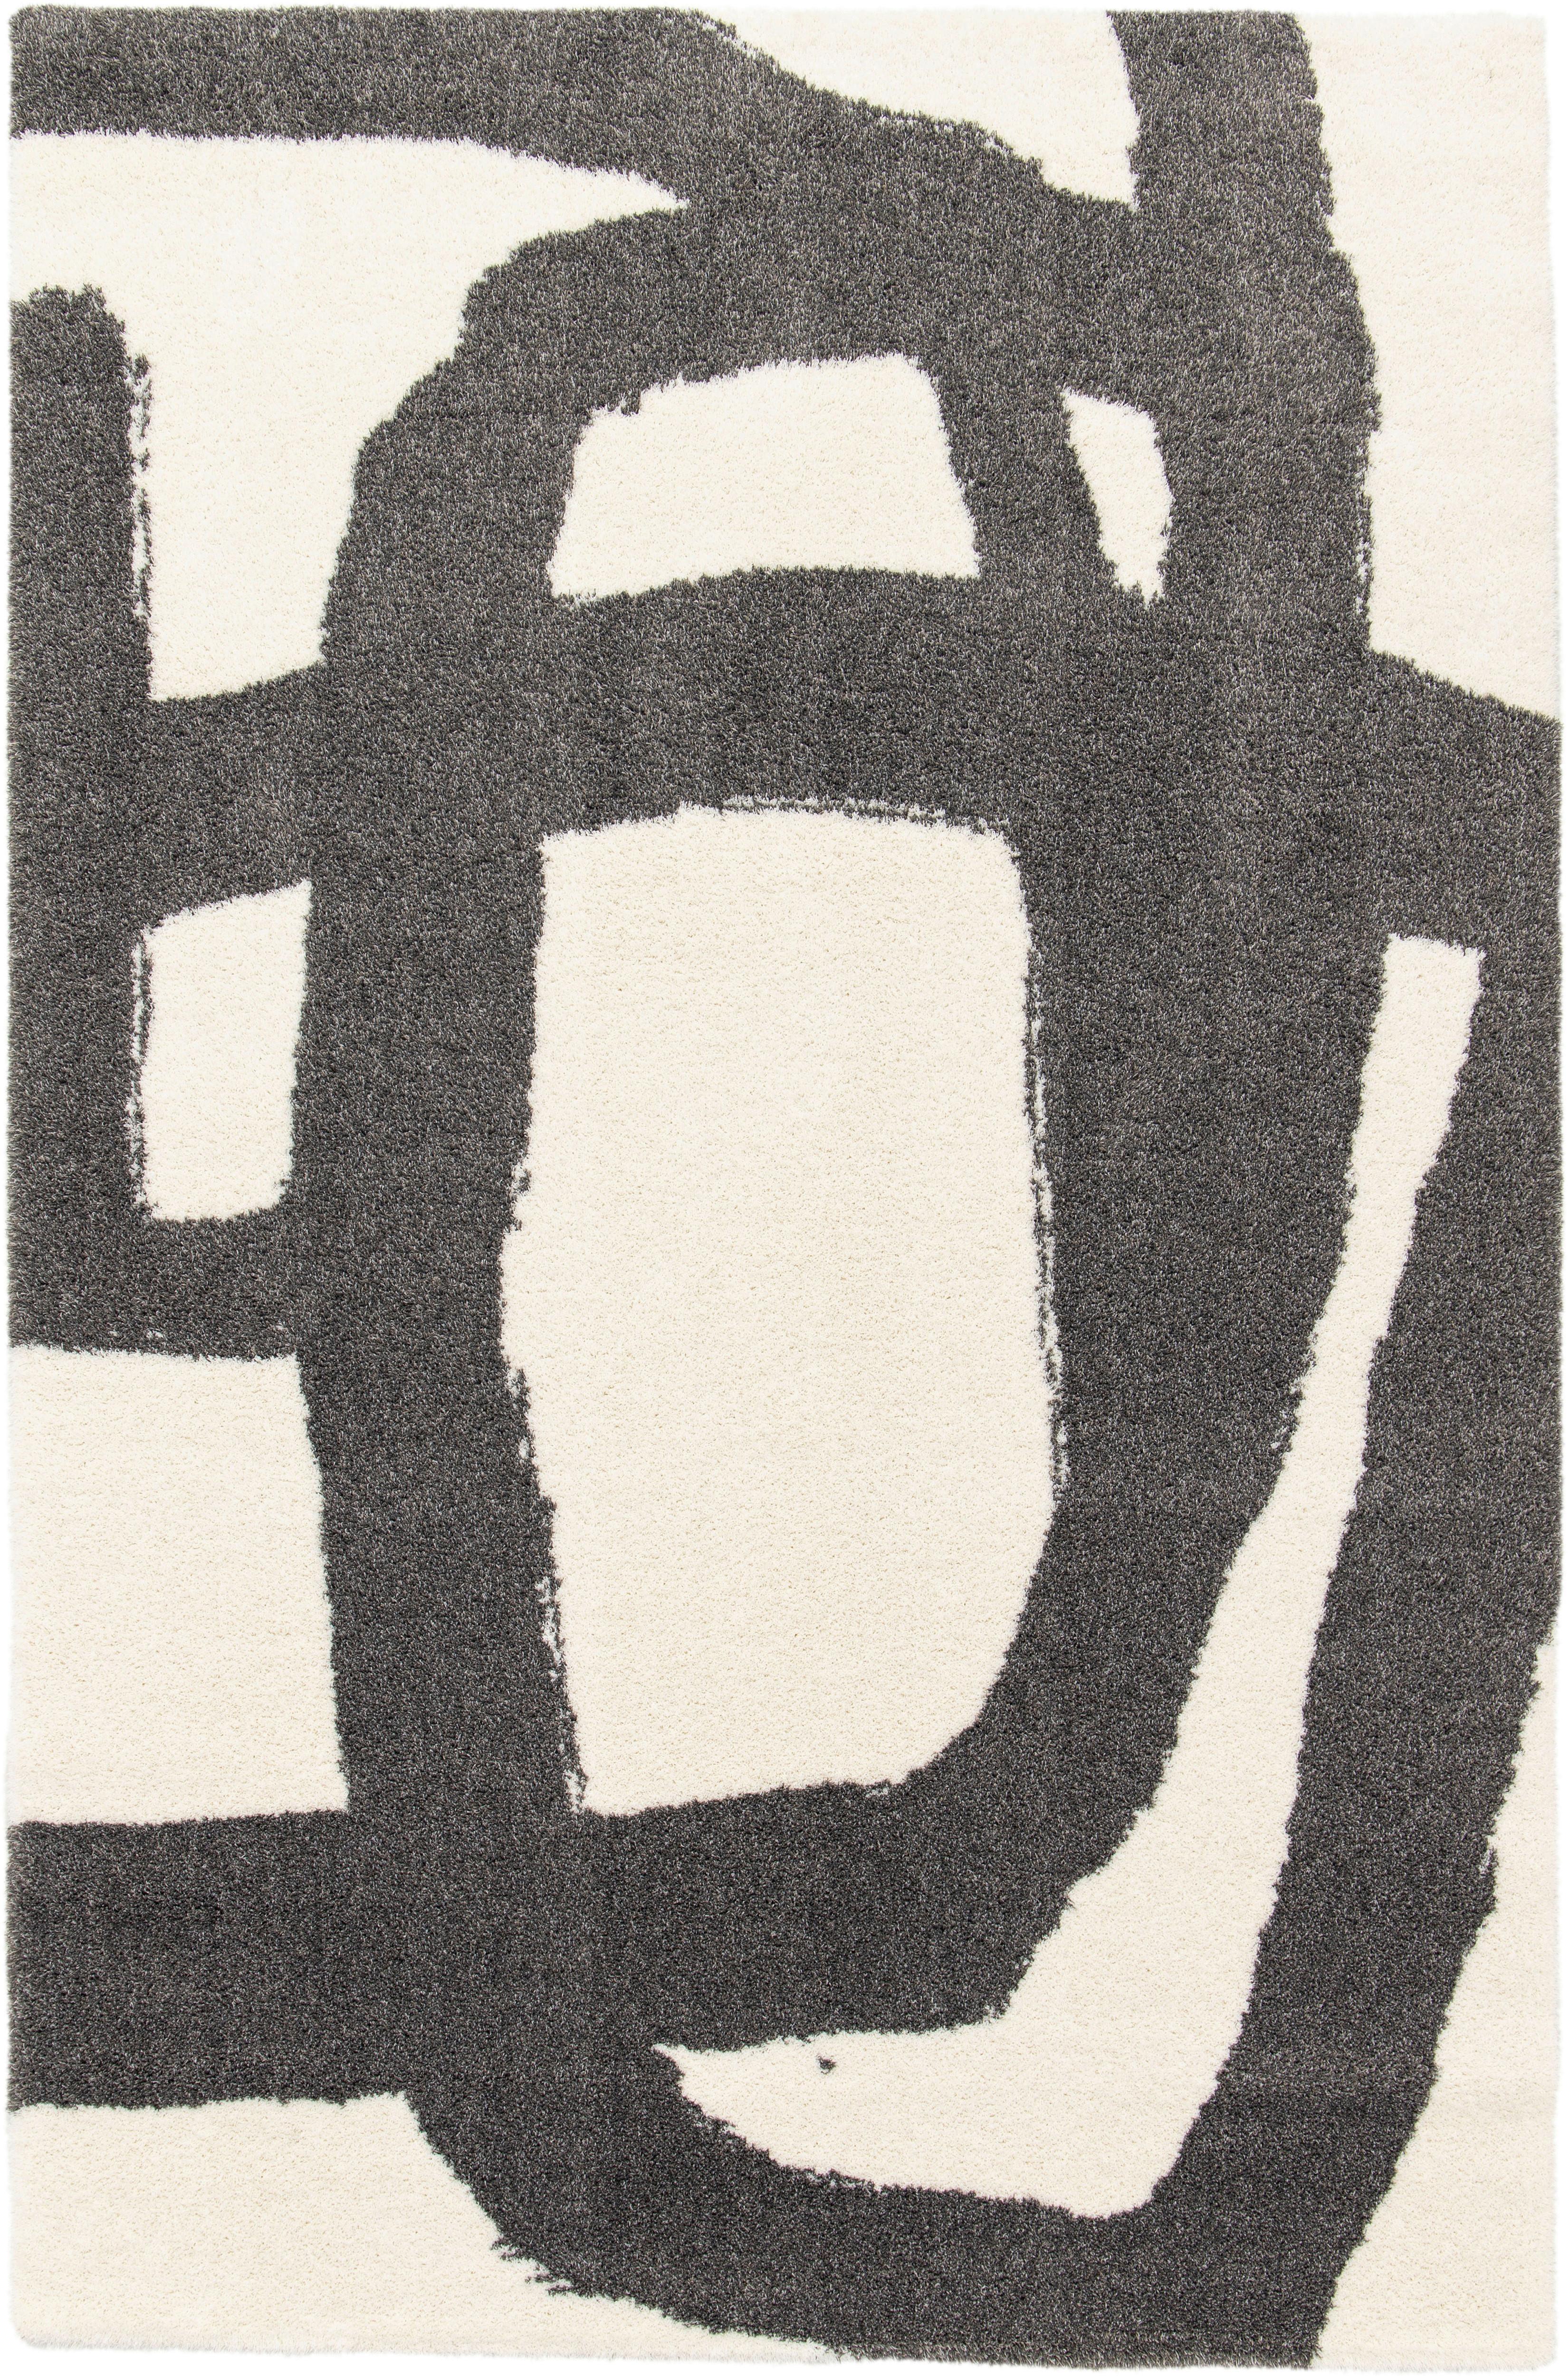 Tkaný Koberec Lilly 1, 80/150cm - černá/krémová, Moderní, textil (80/150cm) - Modern Living